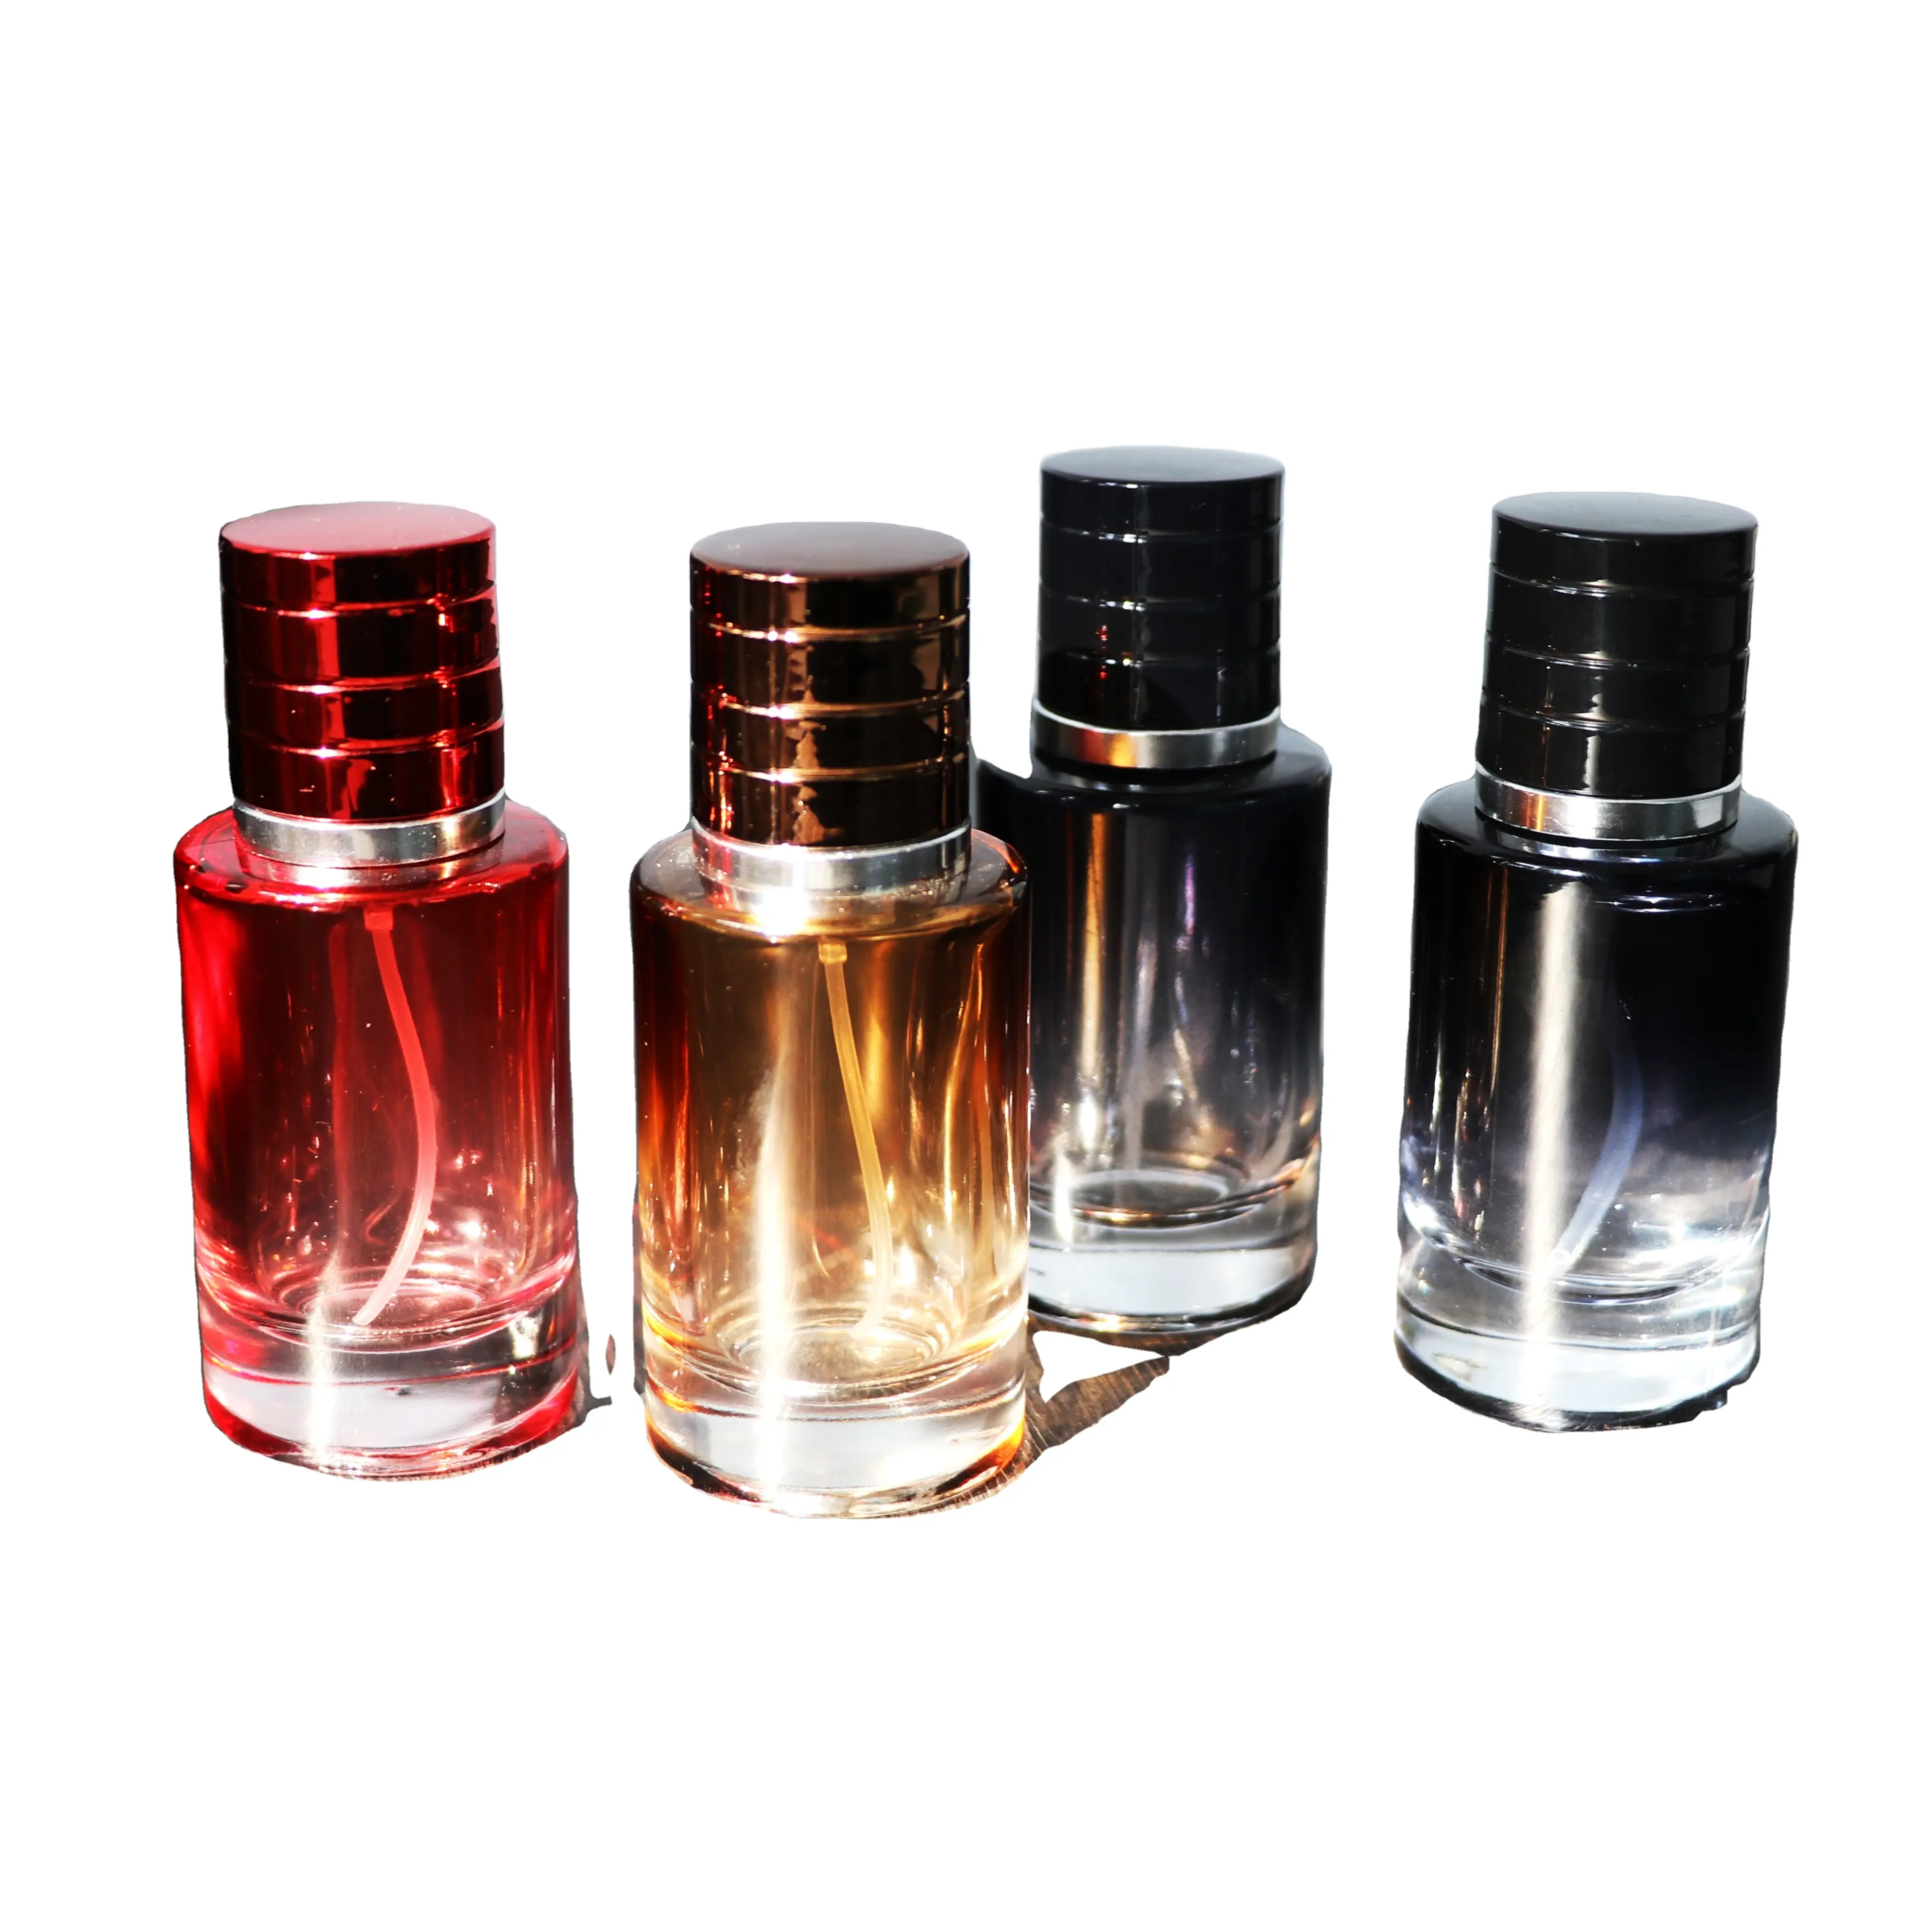 Garrafas de perfume exclusivas de luxo, garrafas de vidro de perfume importadas da china